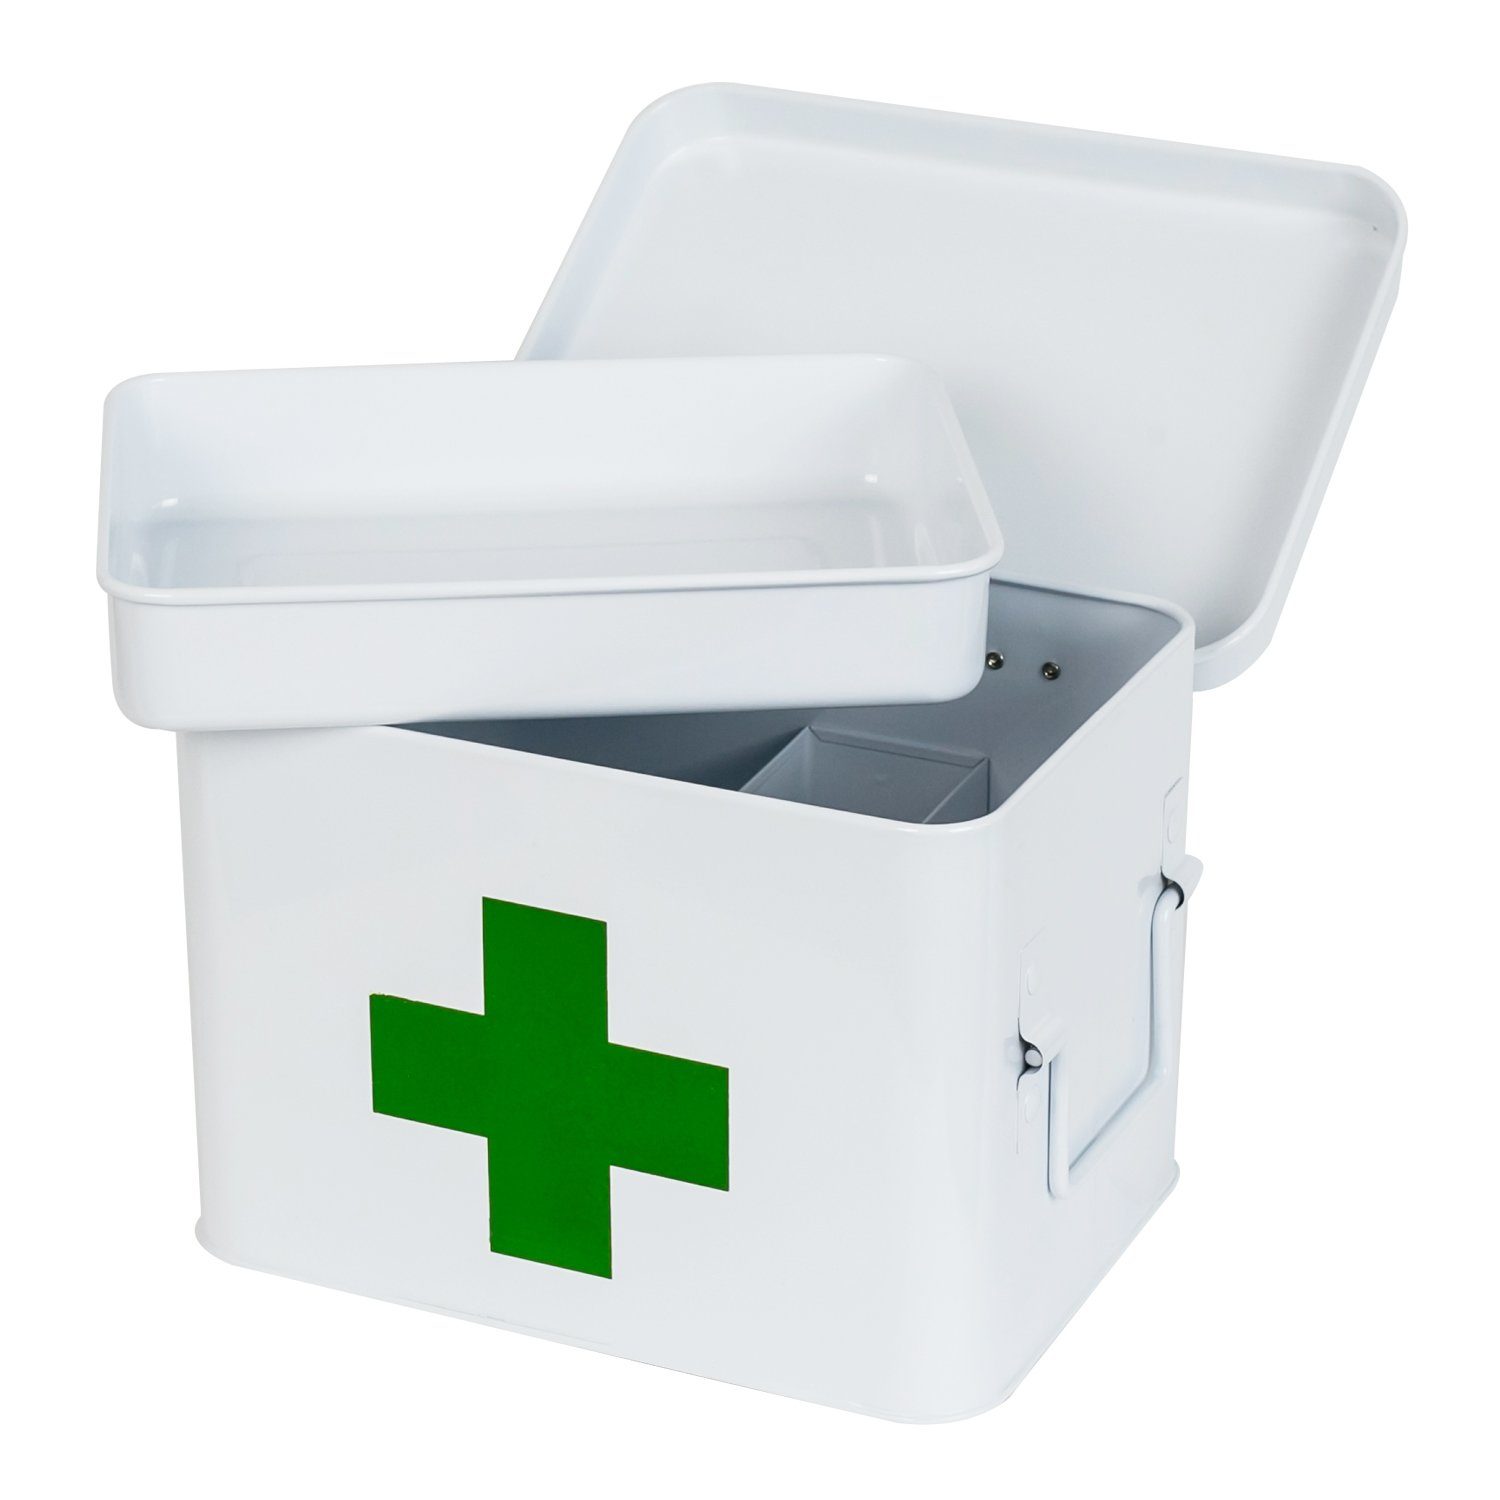 HMF Medizinschrank Erste Hilfe Koffer, Hausapotheke Medikamentenkoffer mit Tragegriffen, 22,5x16,5x15,5 cm | Alle Schränke